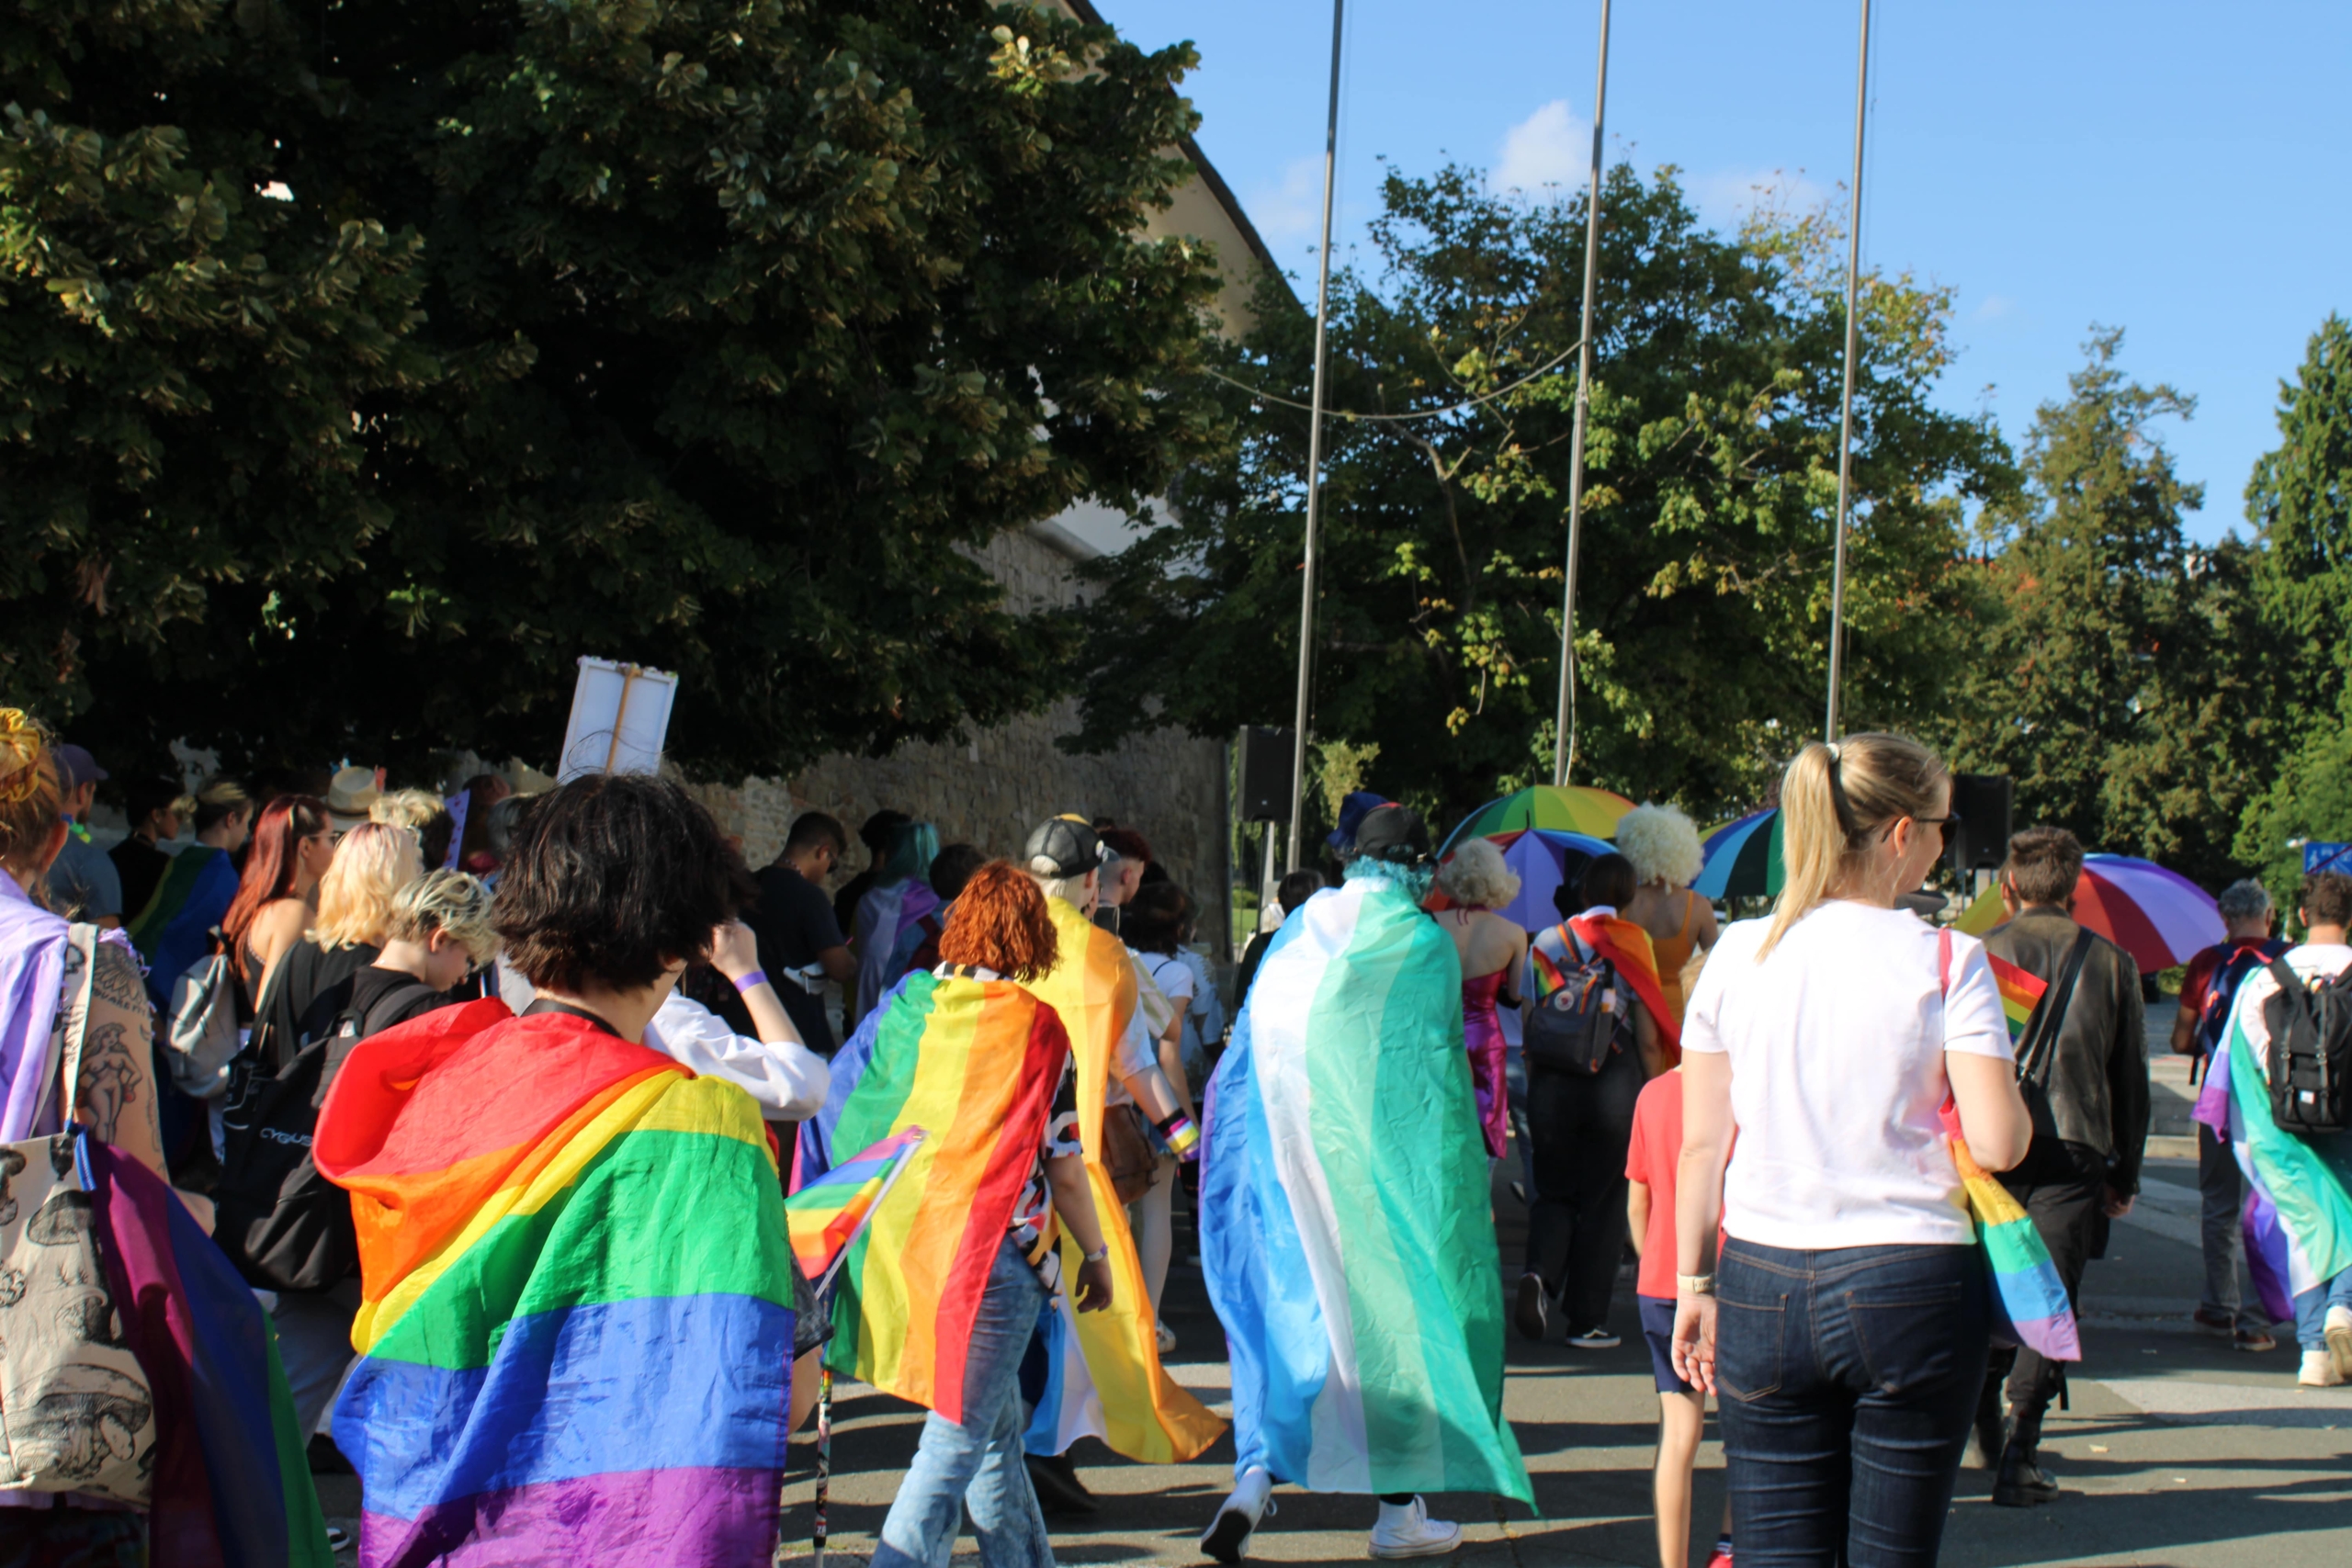 Mariborska LGBTQIA+ scena močna tudi brez parade ponosa